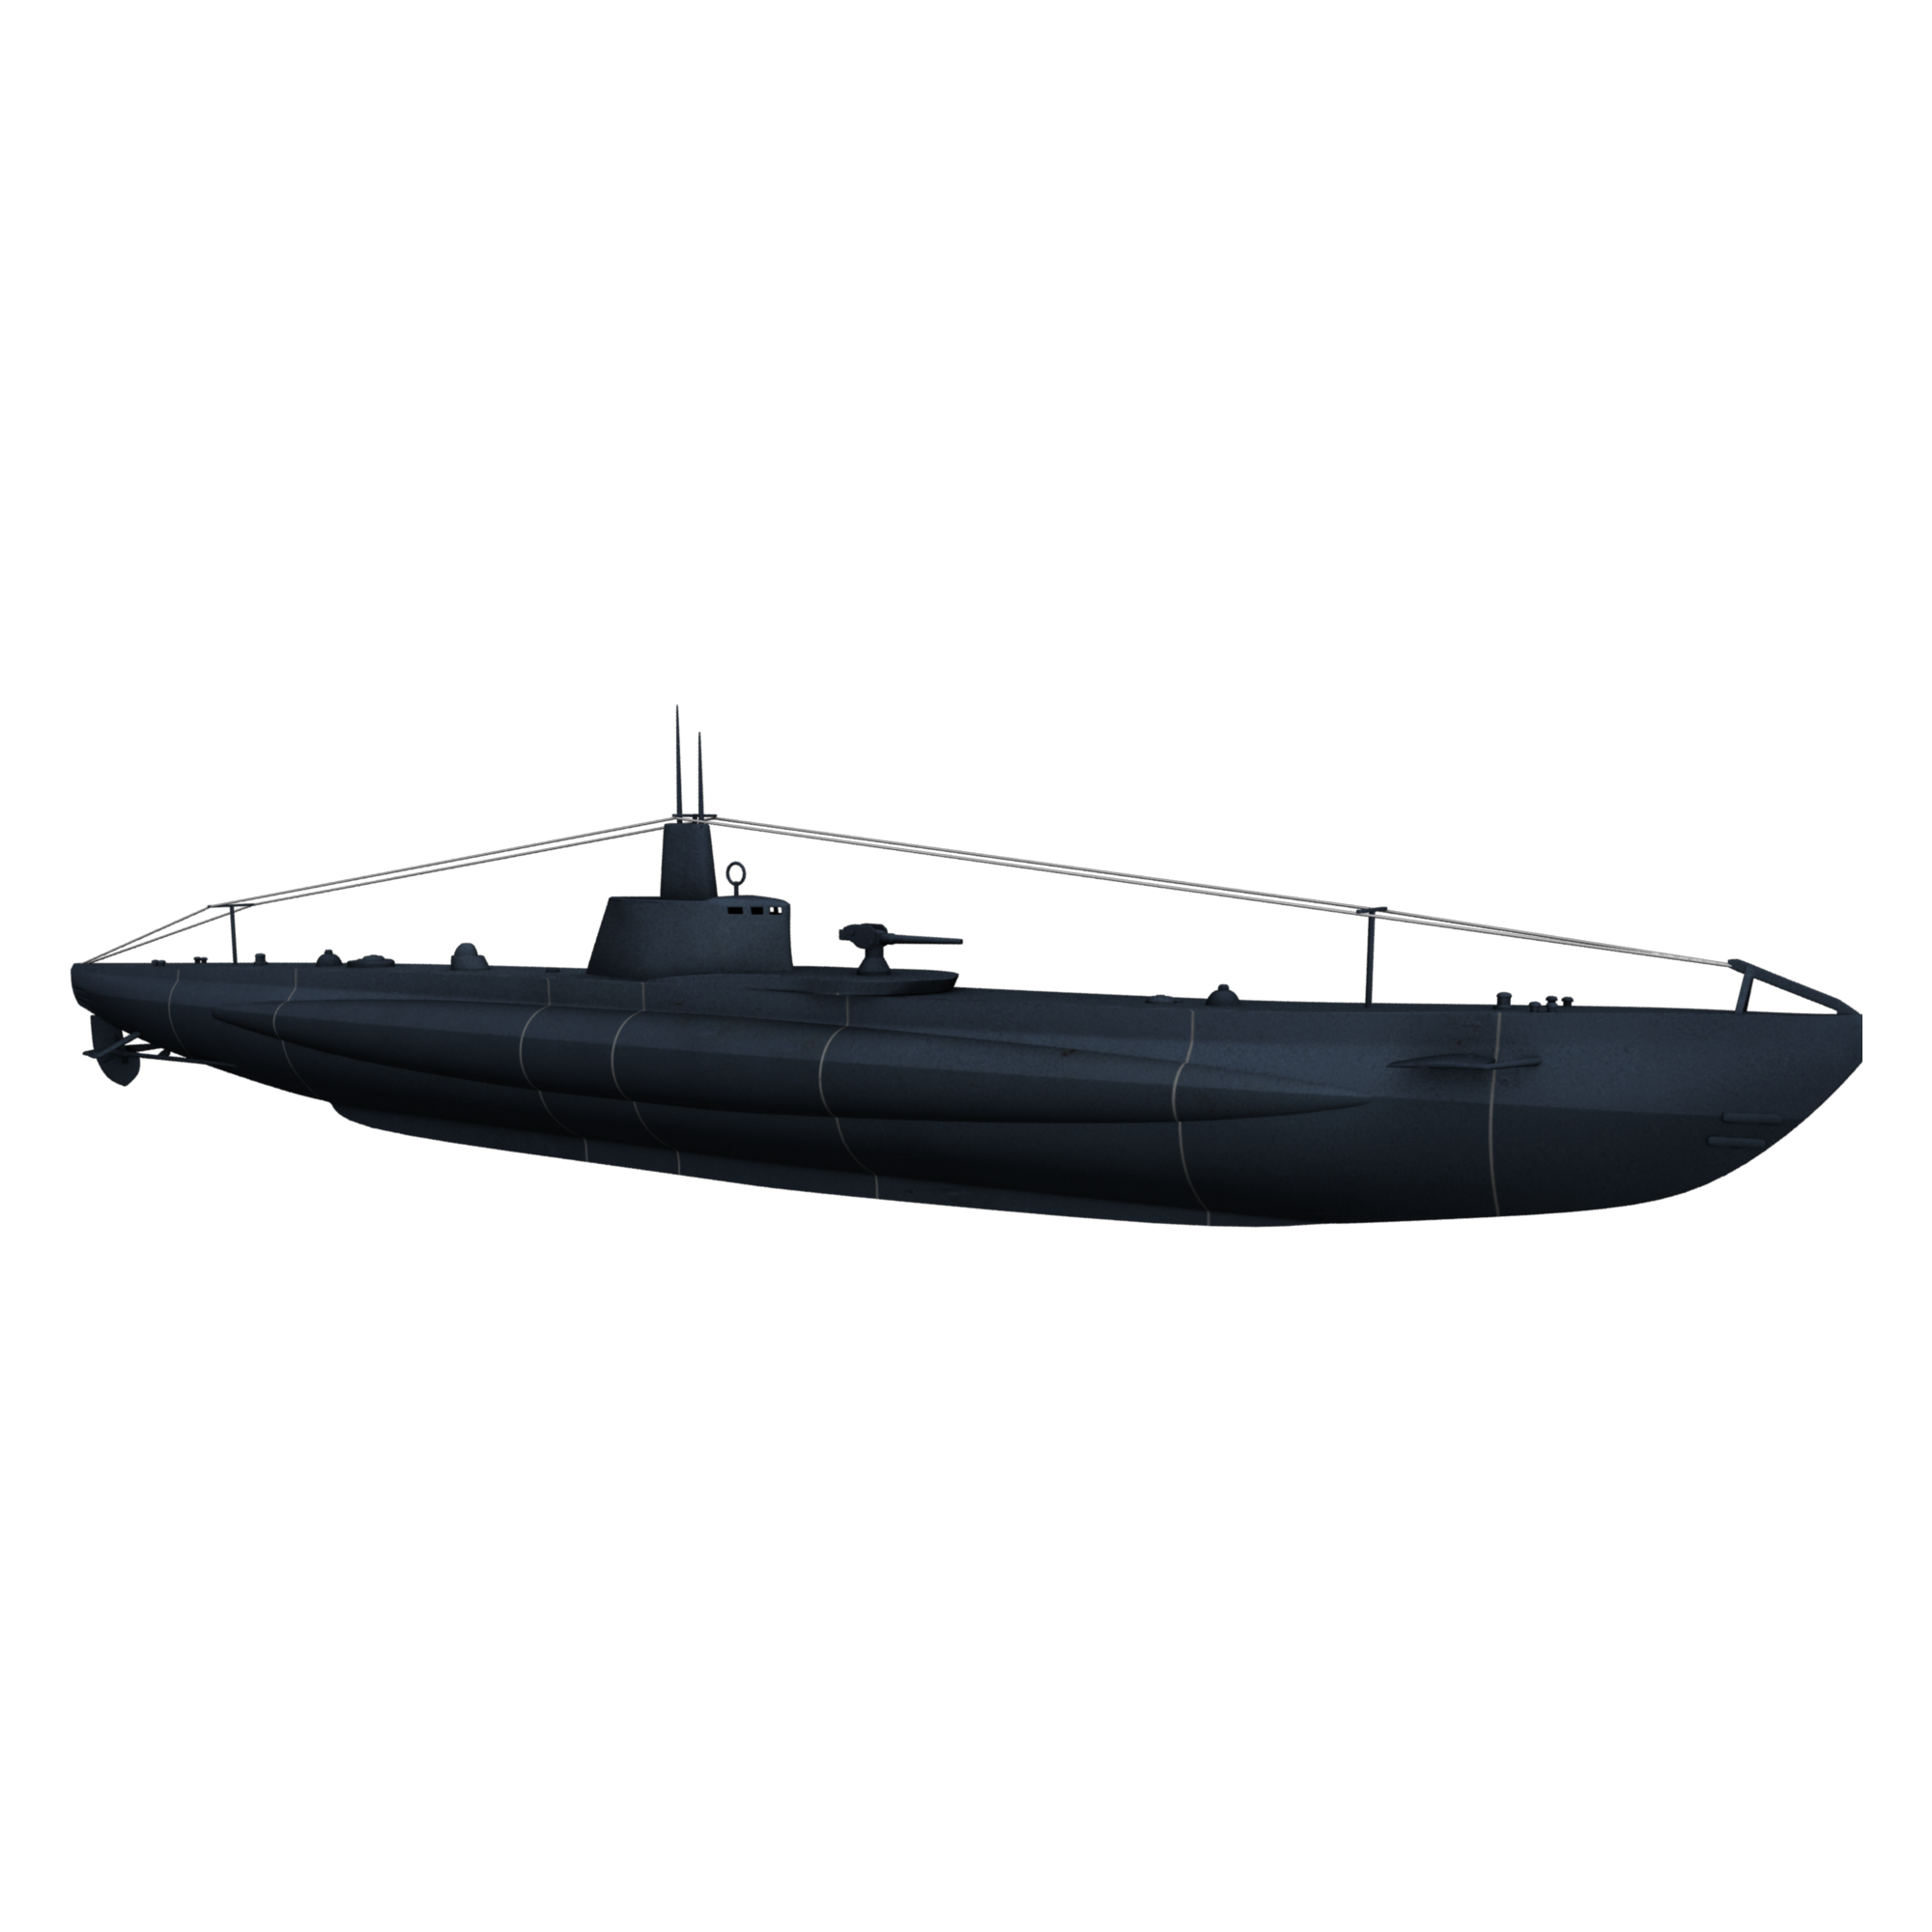 Submarine Transparent Image